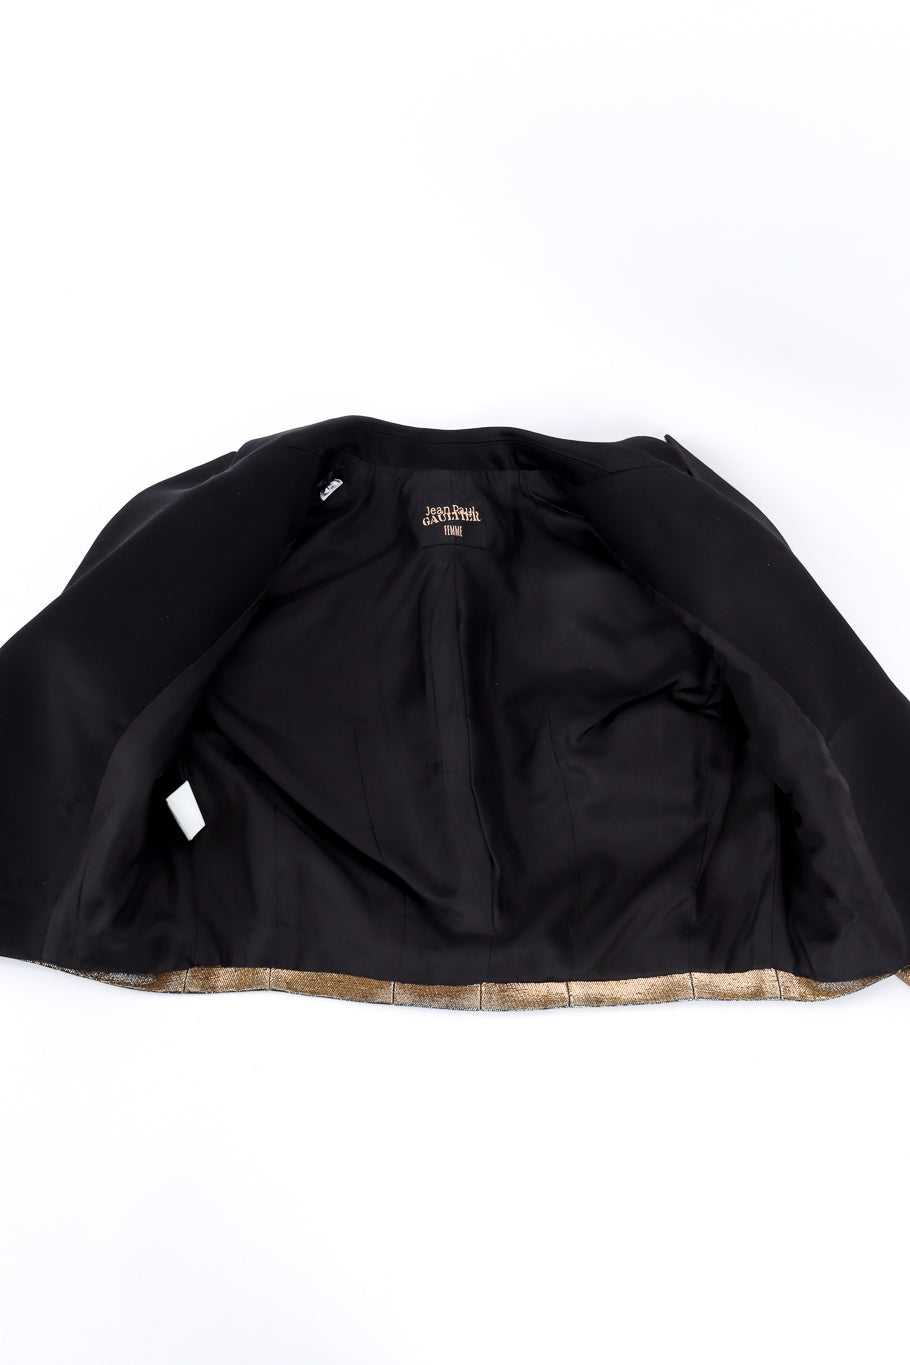 Jean Paul Gaultier Femme Cropped Lamé Tuxedo Jacket view of lining @recessla